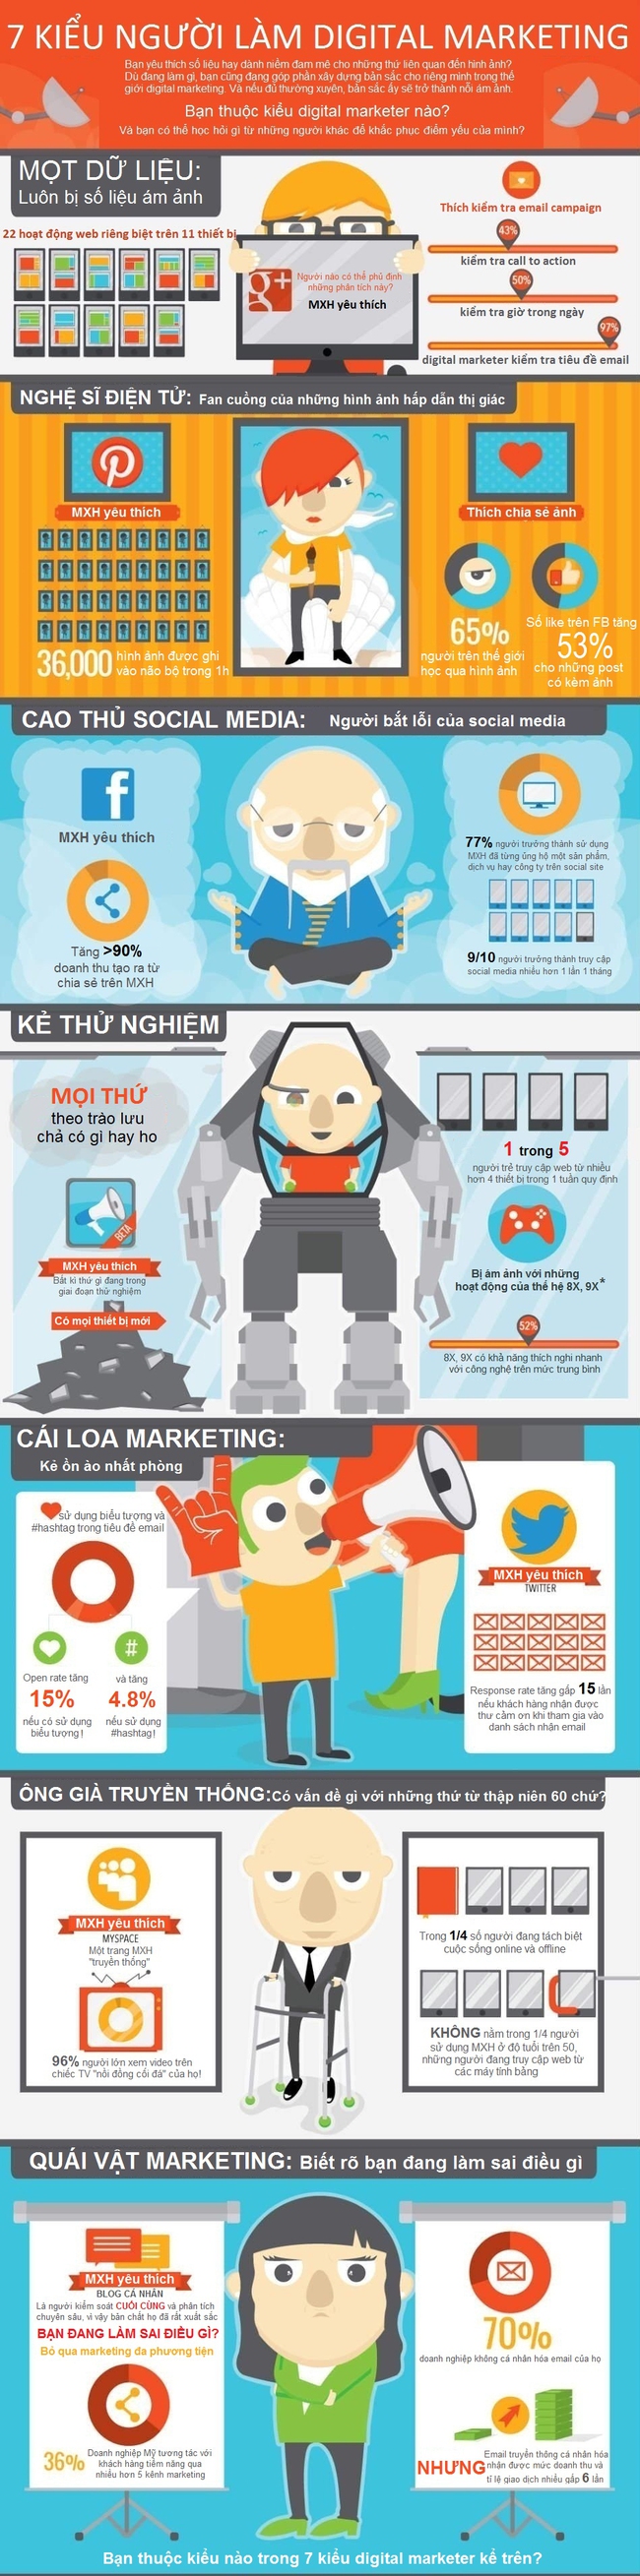 [Infographic] 7 kiểu người làm Digital Marketing